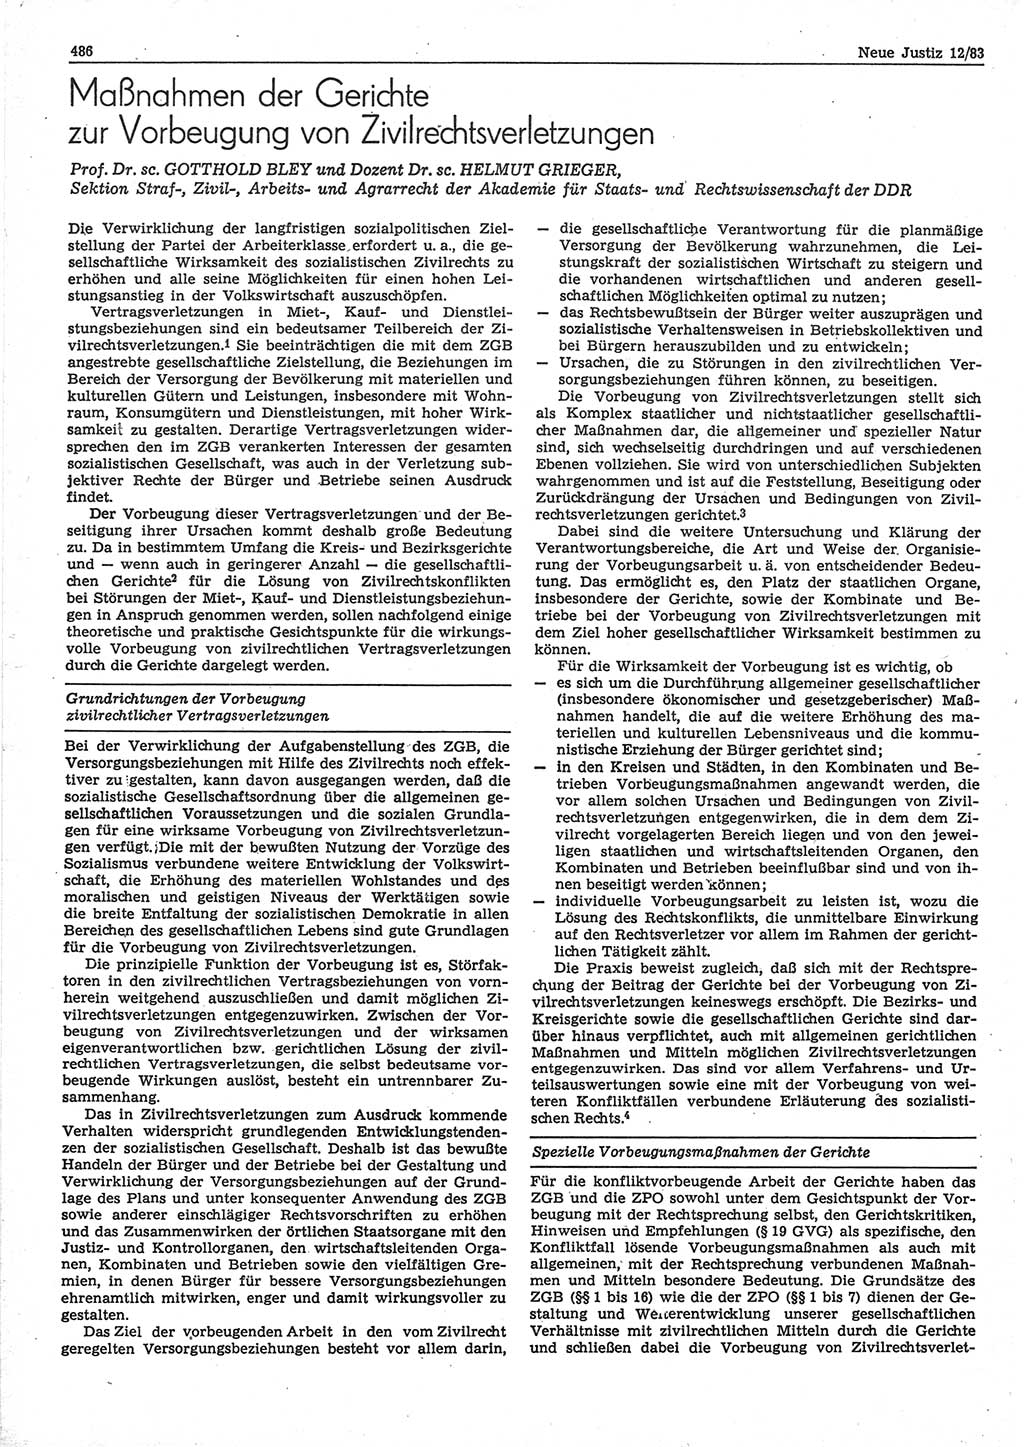 Neue Justiz (NJ), Zeitschrift für sozialistisches Recht und Gesetzlichkeit [Deutsche Demokratische Republik (DDR)], 37. Jahrgang 1983, Seite 486 (NJ DDR 1983, S. 486)